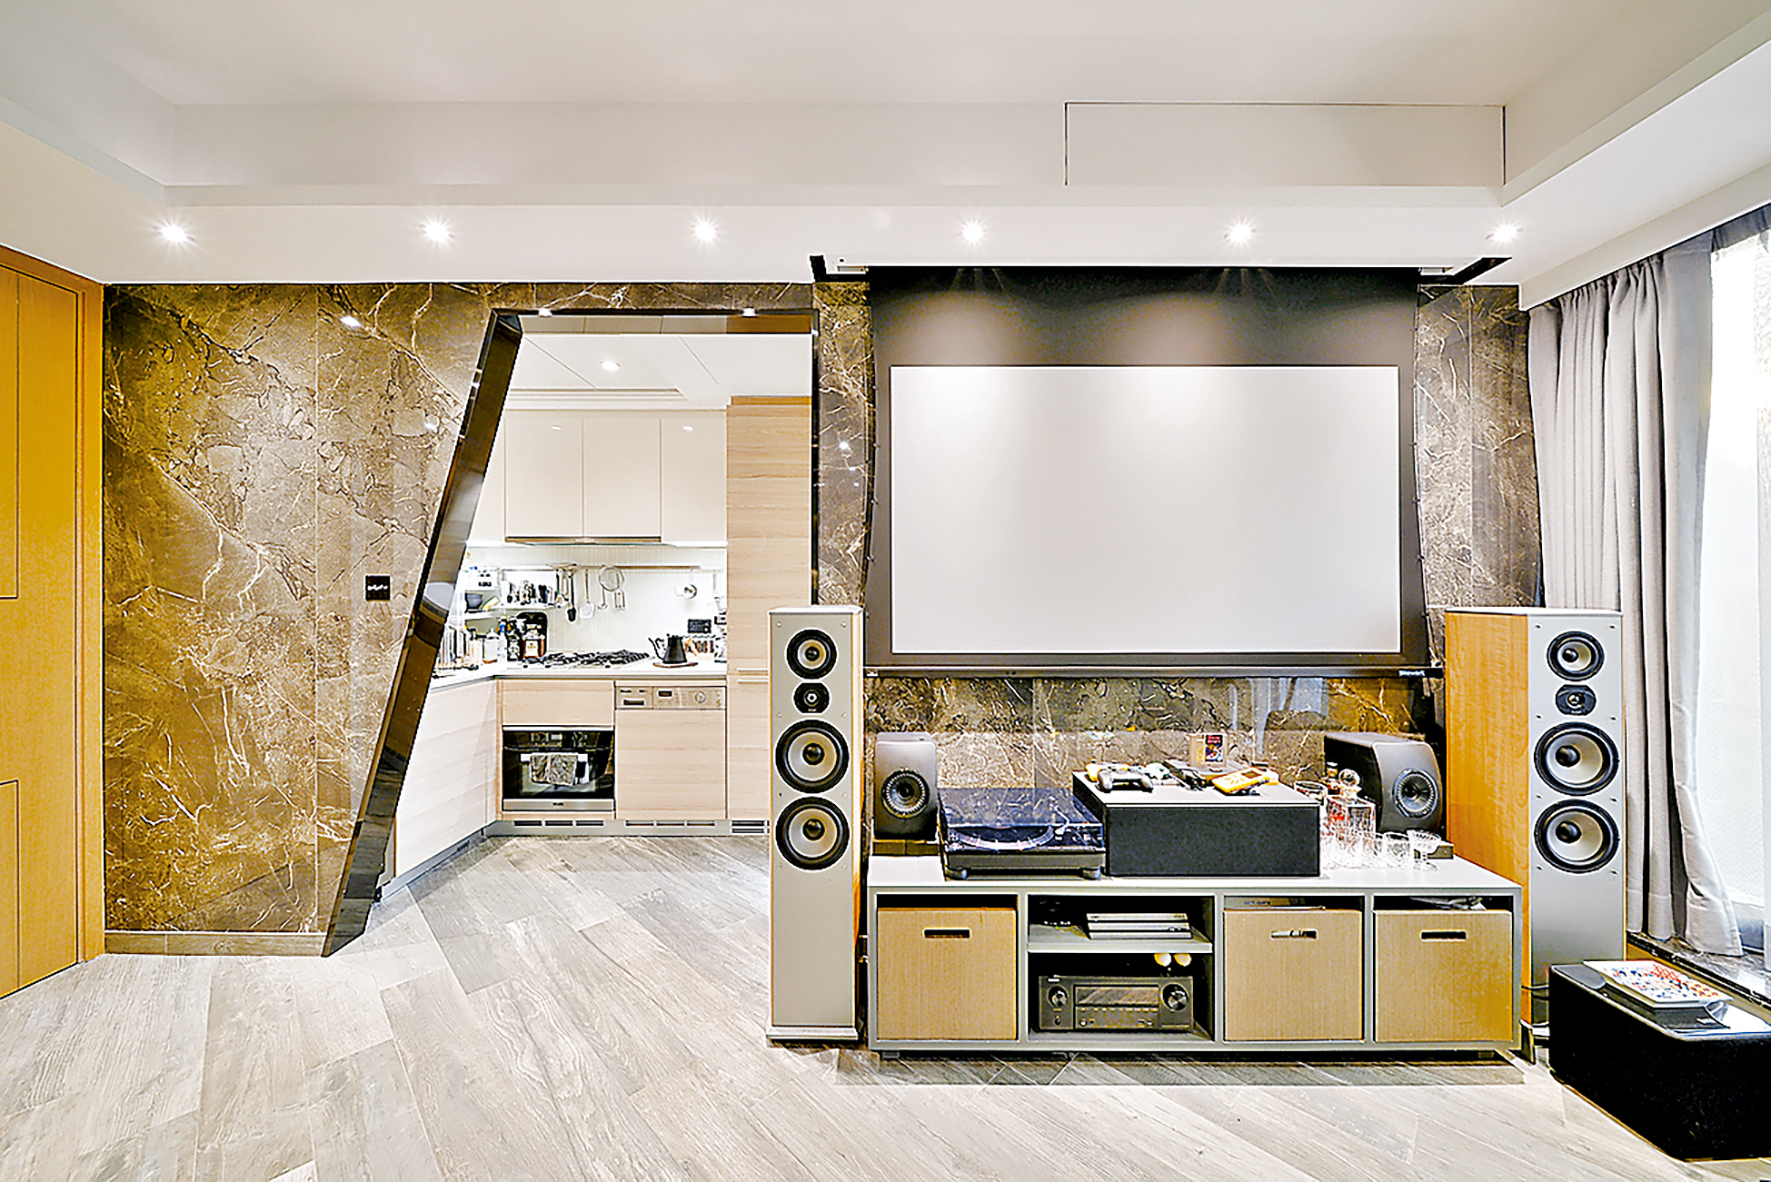 ■以裝飾石材鋪設的電視背牆延伸至廚房入口牆身，形成空間延伸的視覺效果。